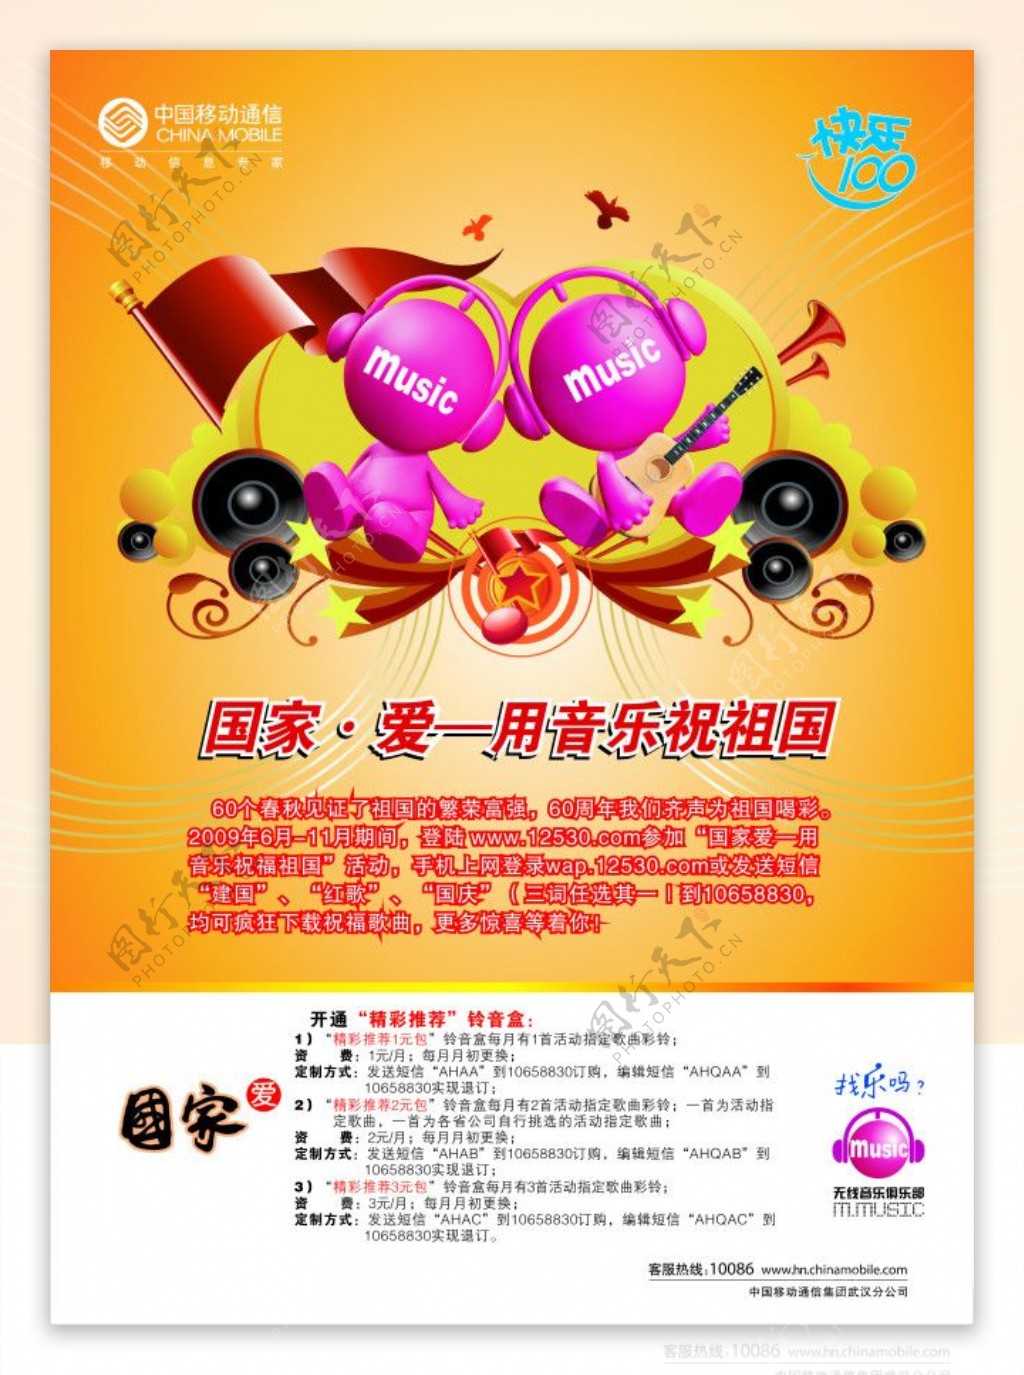 中国移动公司彩铃宣传海报